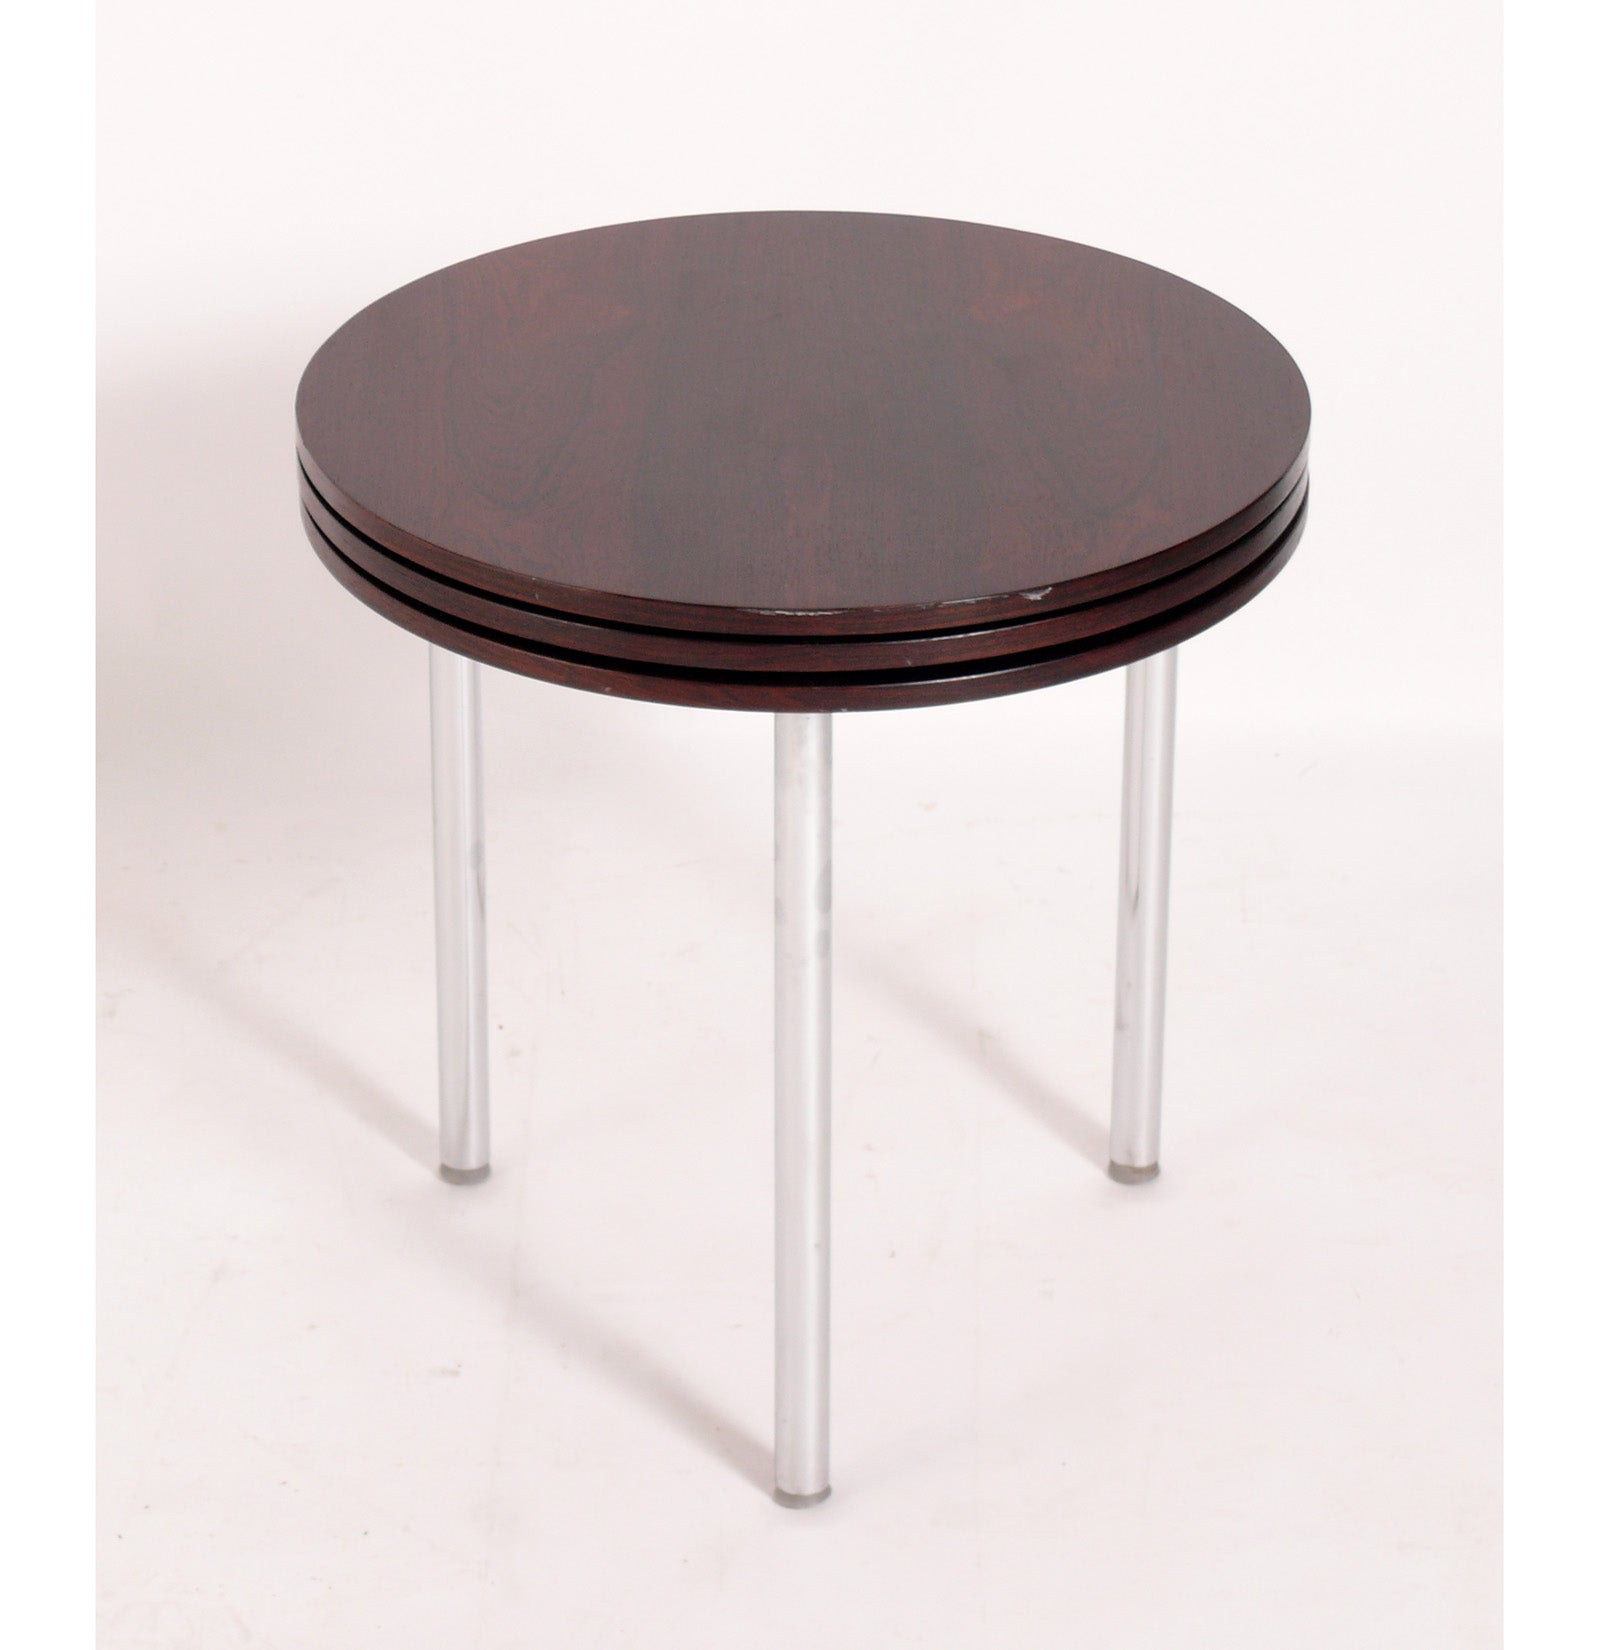 Dänische moderne Stapeltische aus Palisanderholz, entworfen von Poul Norreklit für E. Pedersen, Dänemark, um 1960. Das geniale Design stapelt drei Tische auf der Grundfläche eines einzigen Tisches!